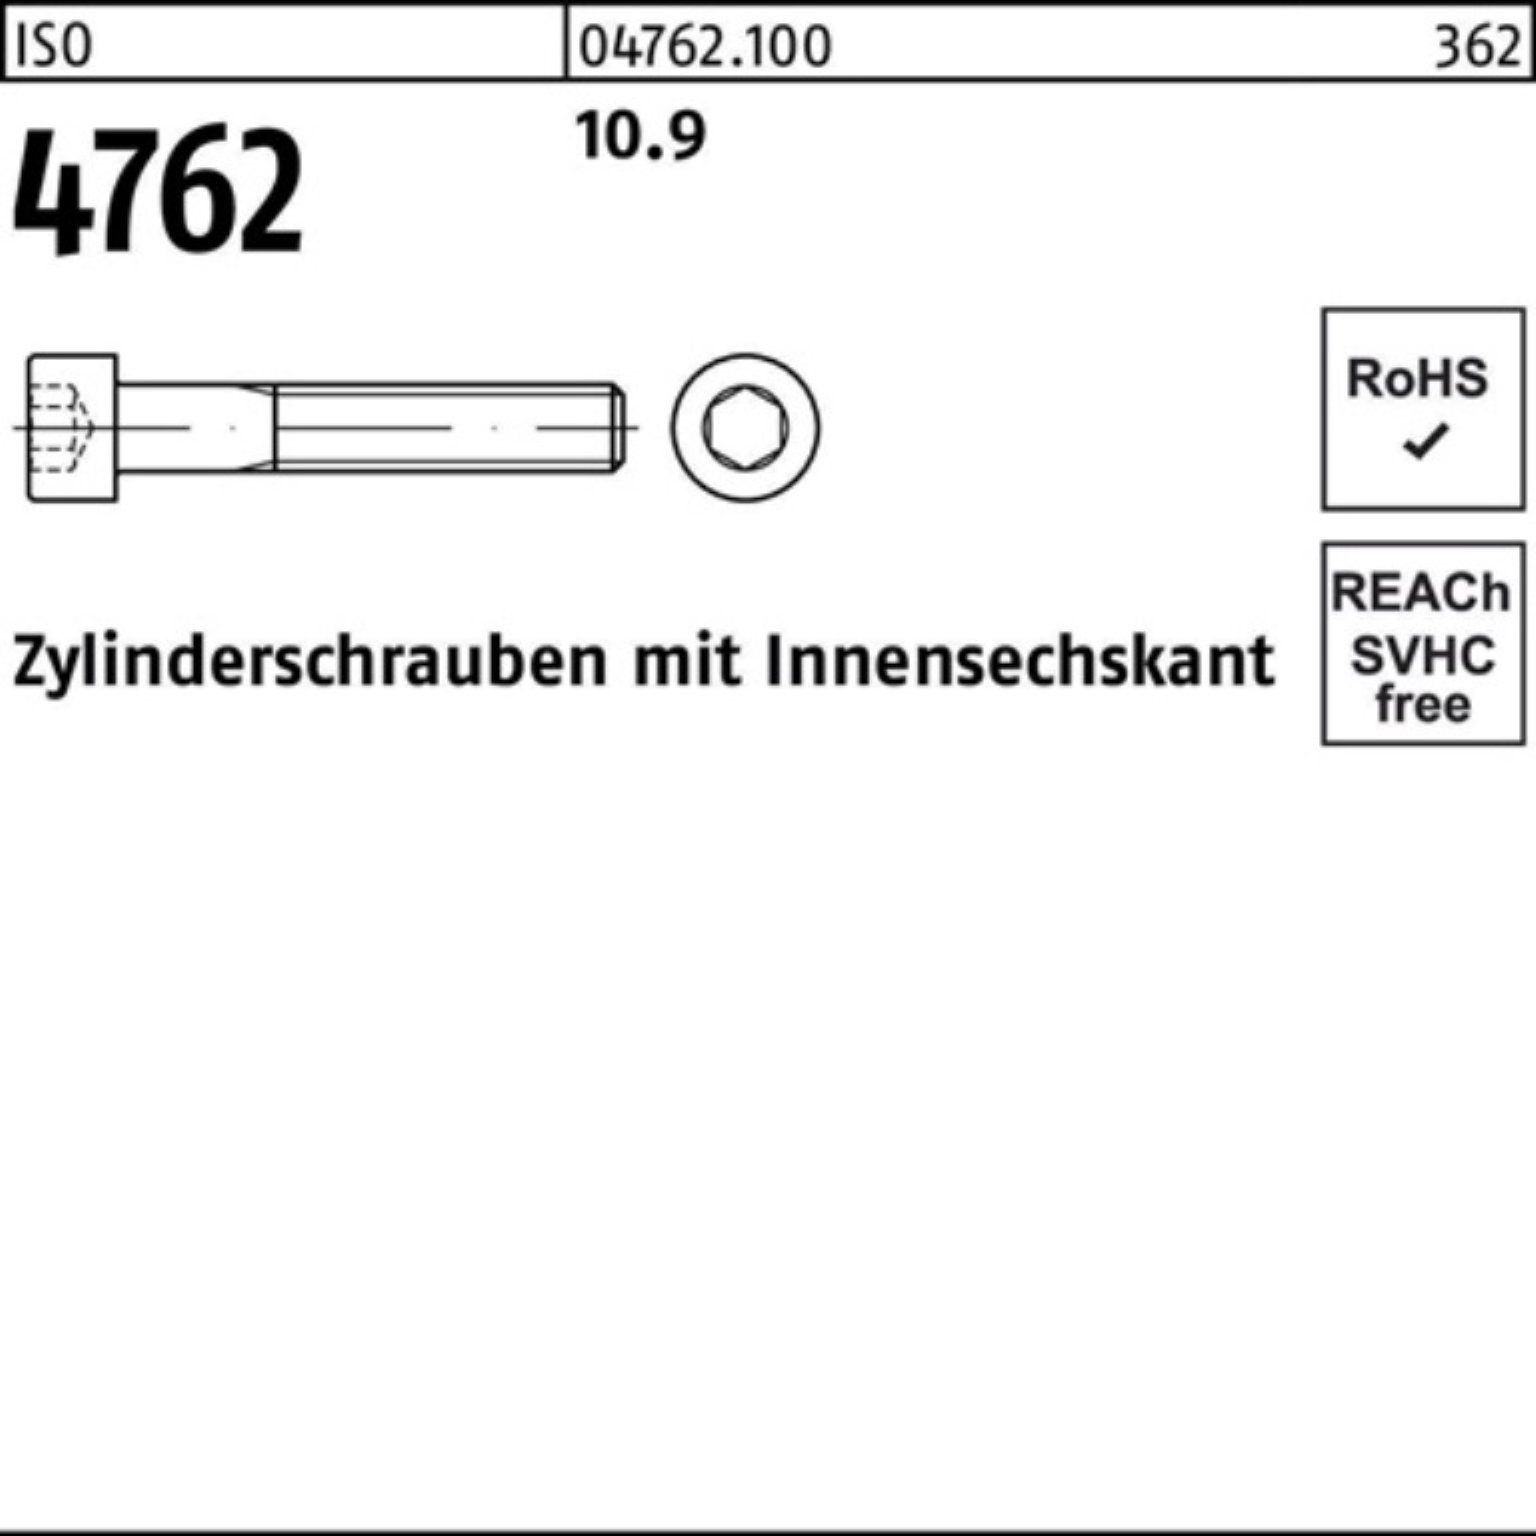 Reyher Zylinderschraube Innen-6kt 10.9 Zylinderschraube 100er 4762 25 ISO Pack 50 Stück M20x